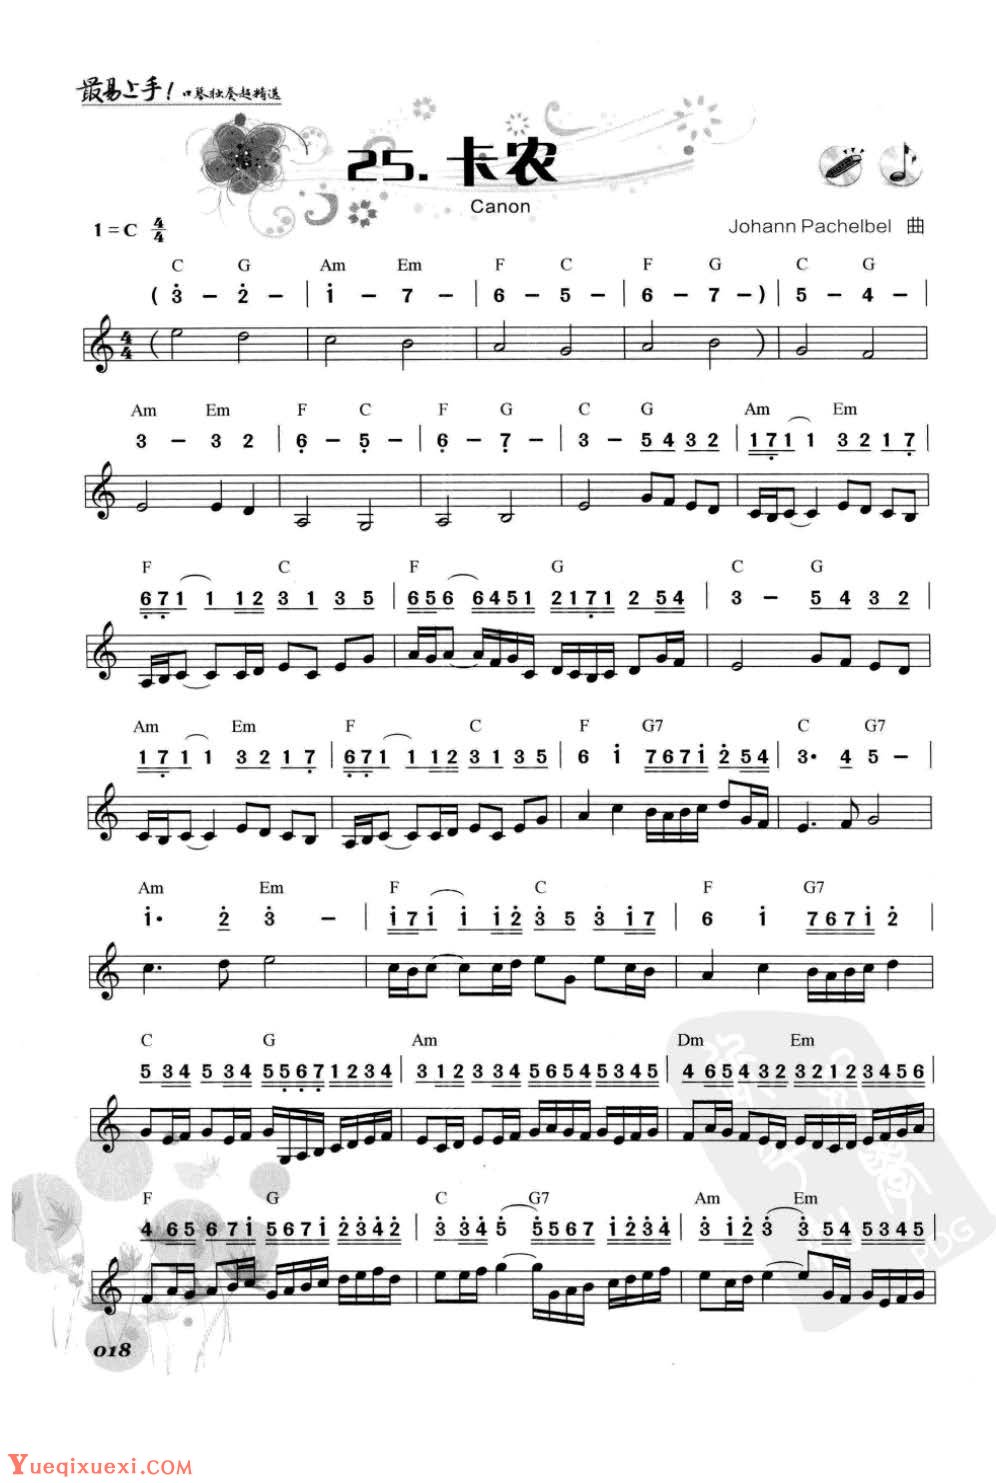 口琴古典名曲《卡农》简谱与五线谱对照